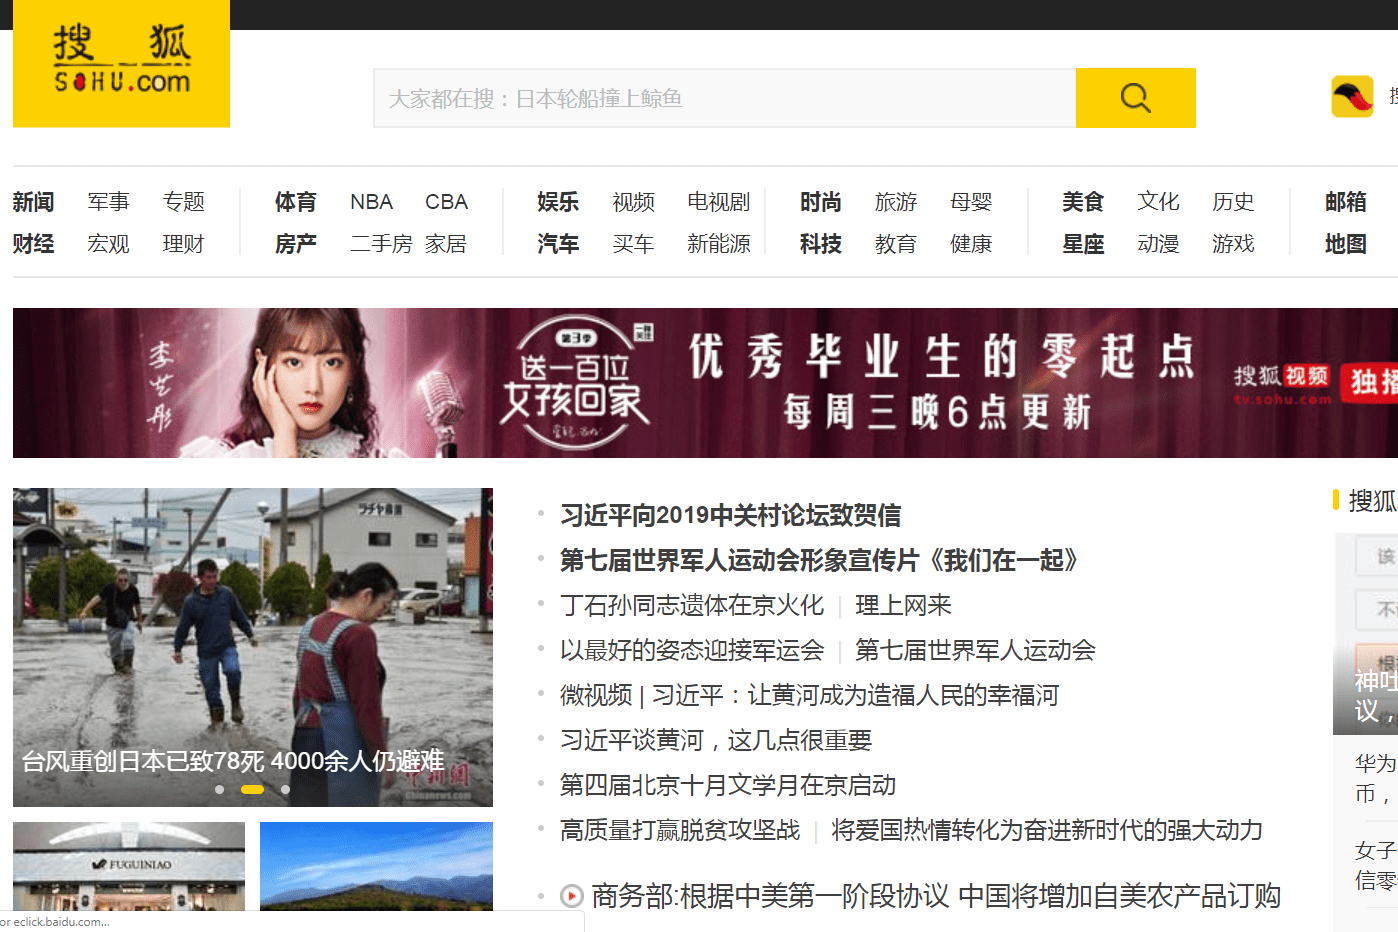 Schermafbeelding van de startpagina van Sohu.com